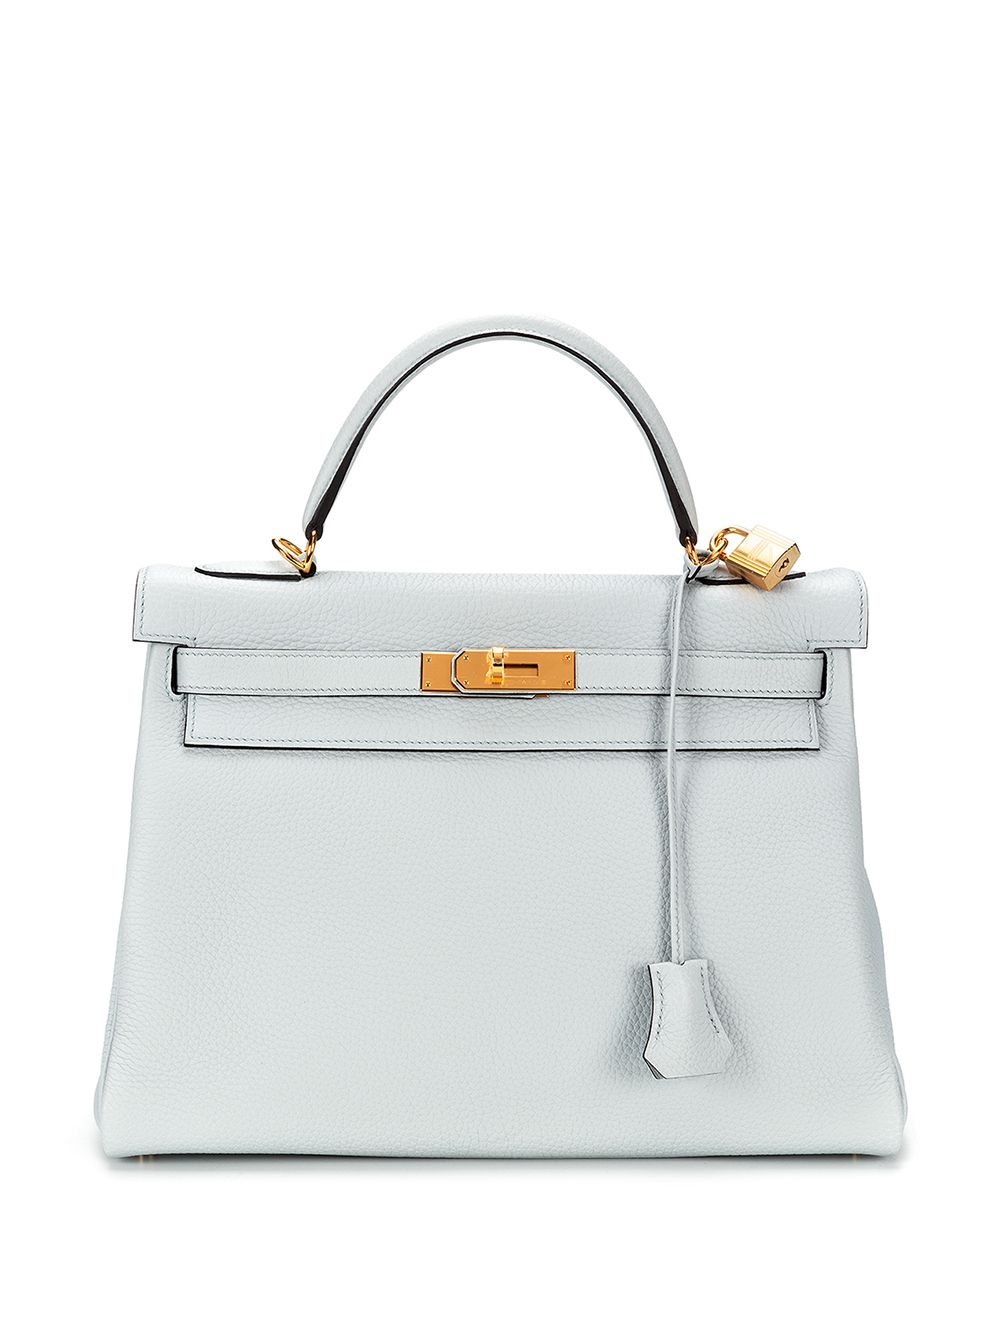 Hermès Pre-owned Kelly 32 Sellier 2way Bag